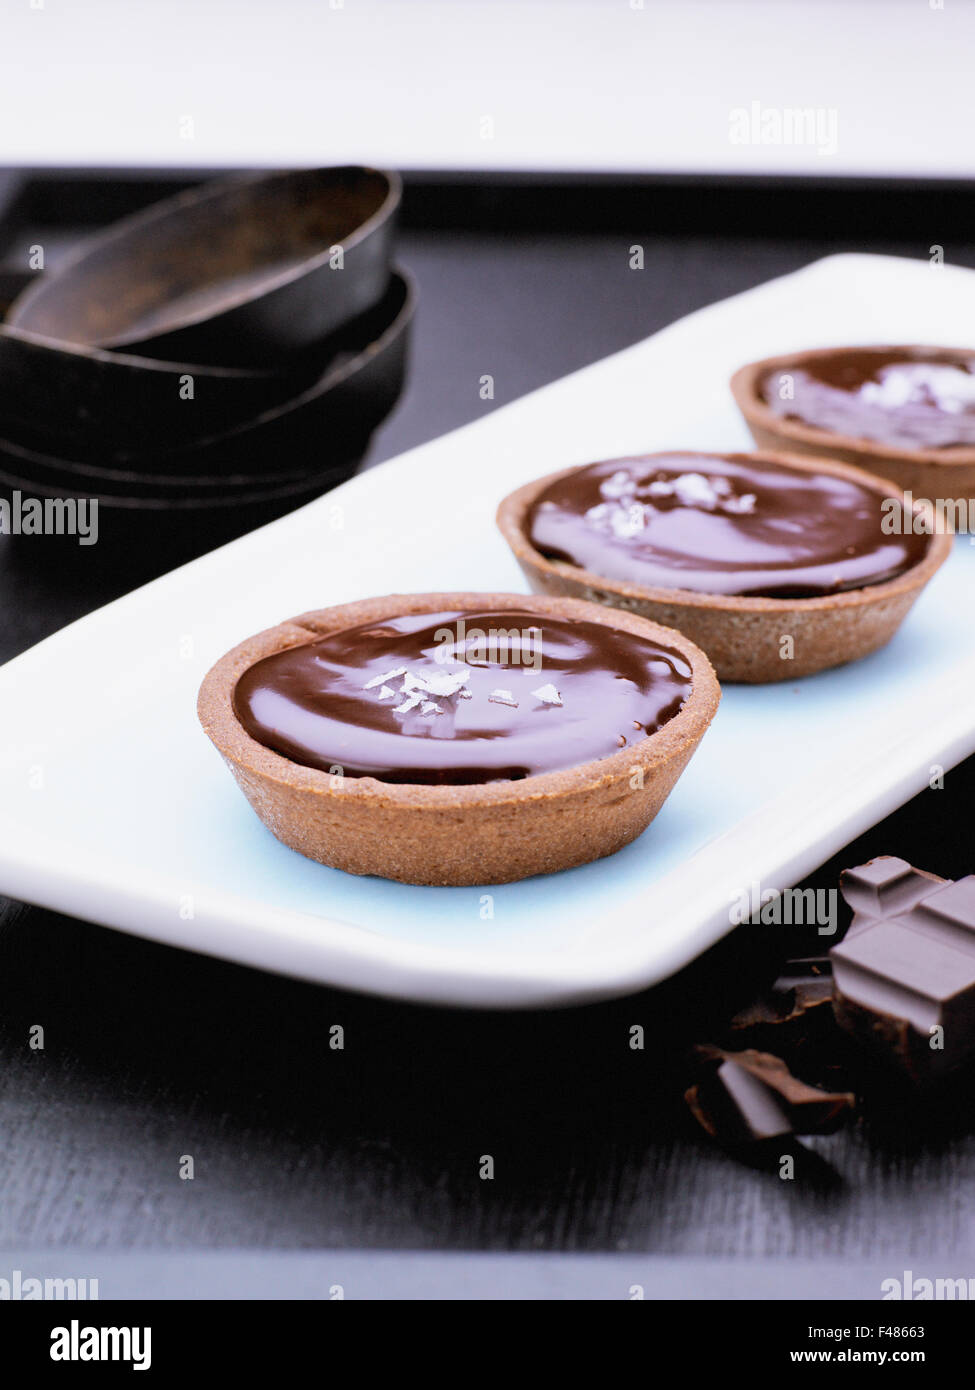 Chocolate pie. Stock Photo